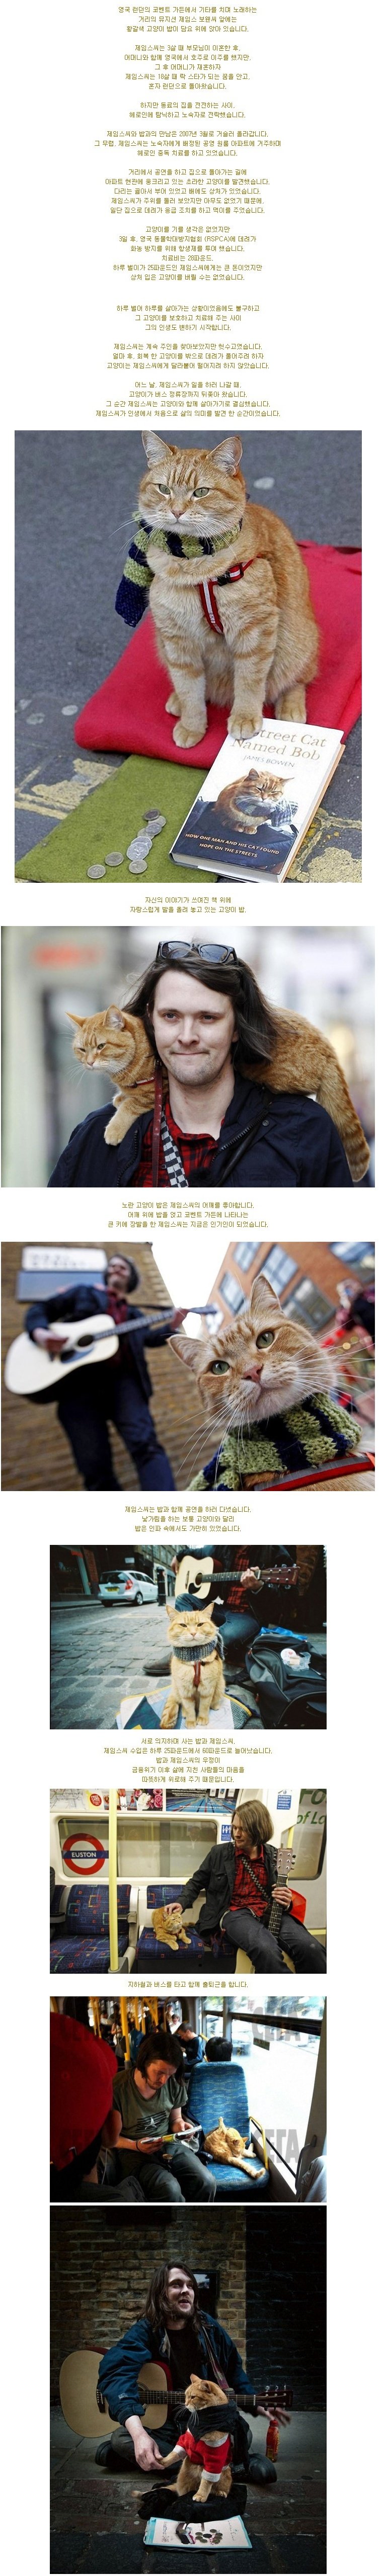 런던 거리의 어느 뮤지션과 고양이.jpg